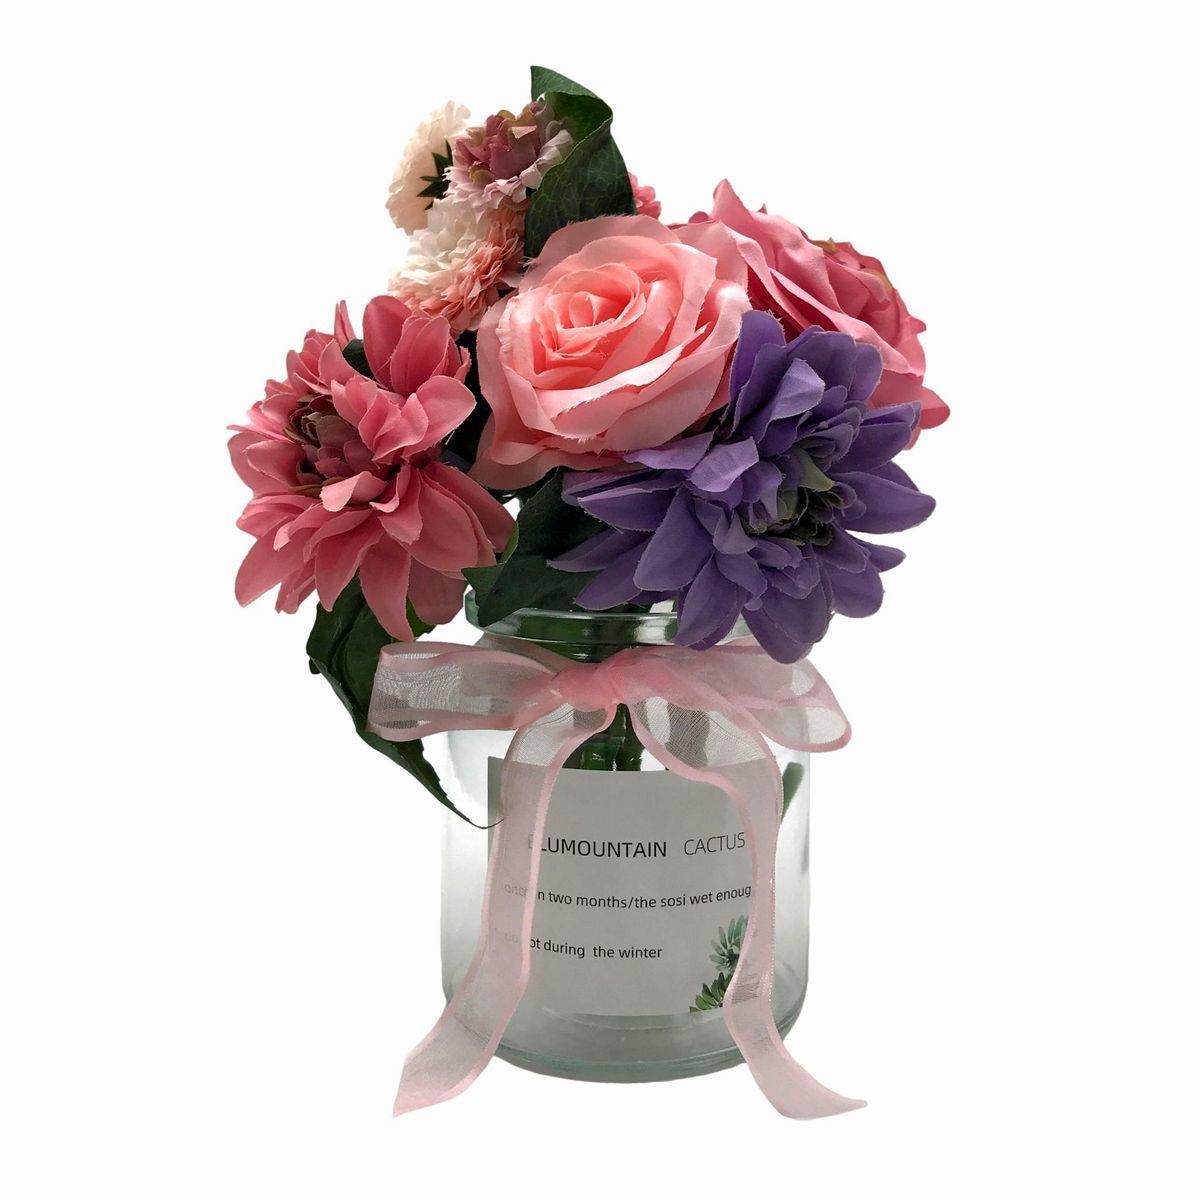 Искусственные цветы розы георгины в стеклянной вазе с лентой (розовый х фиолетовый), ручное ремесло, ремесло, арт цветок, прессованные цветы, общий